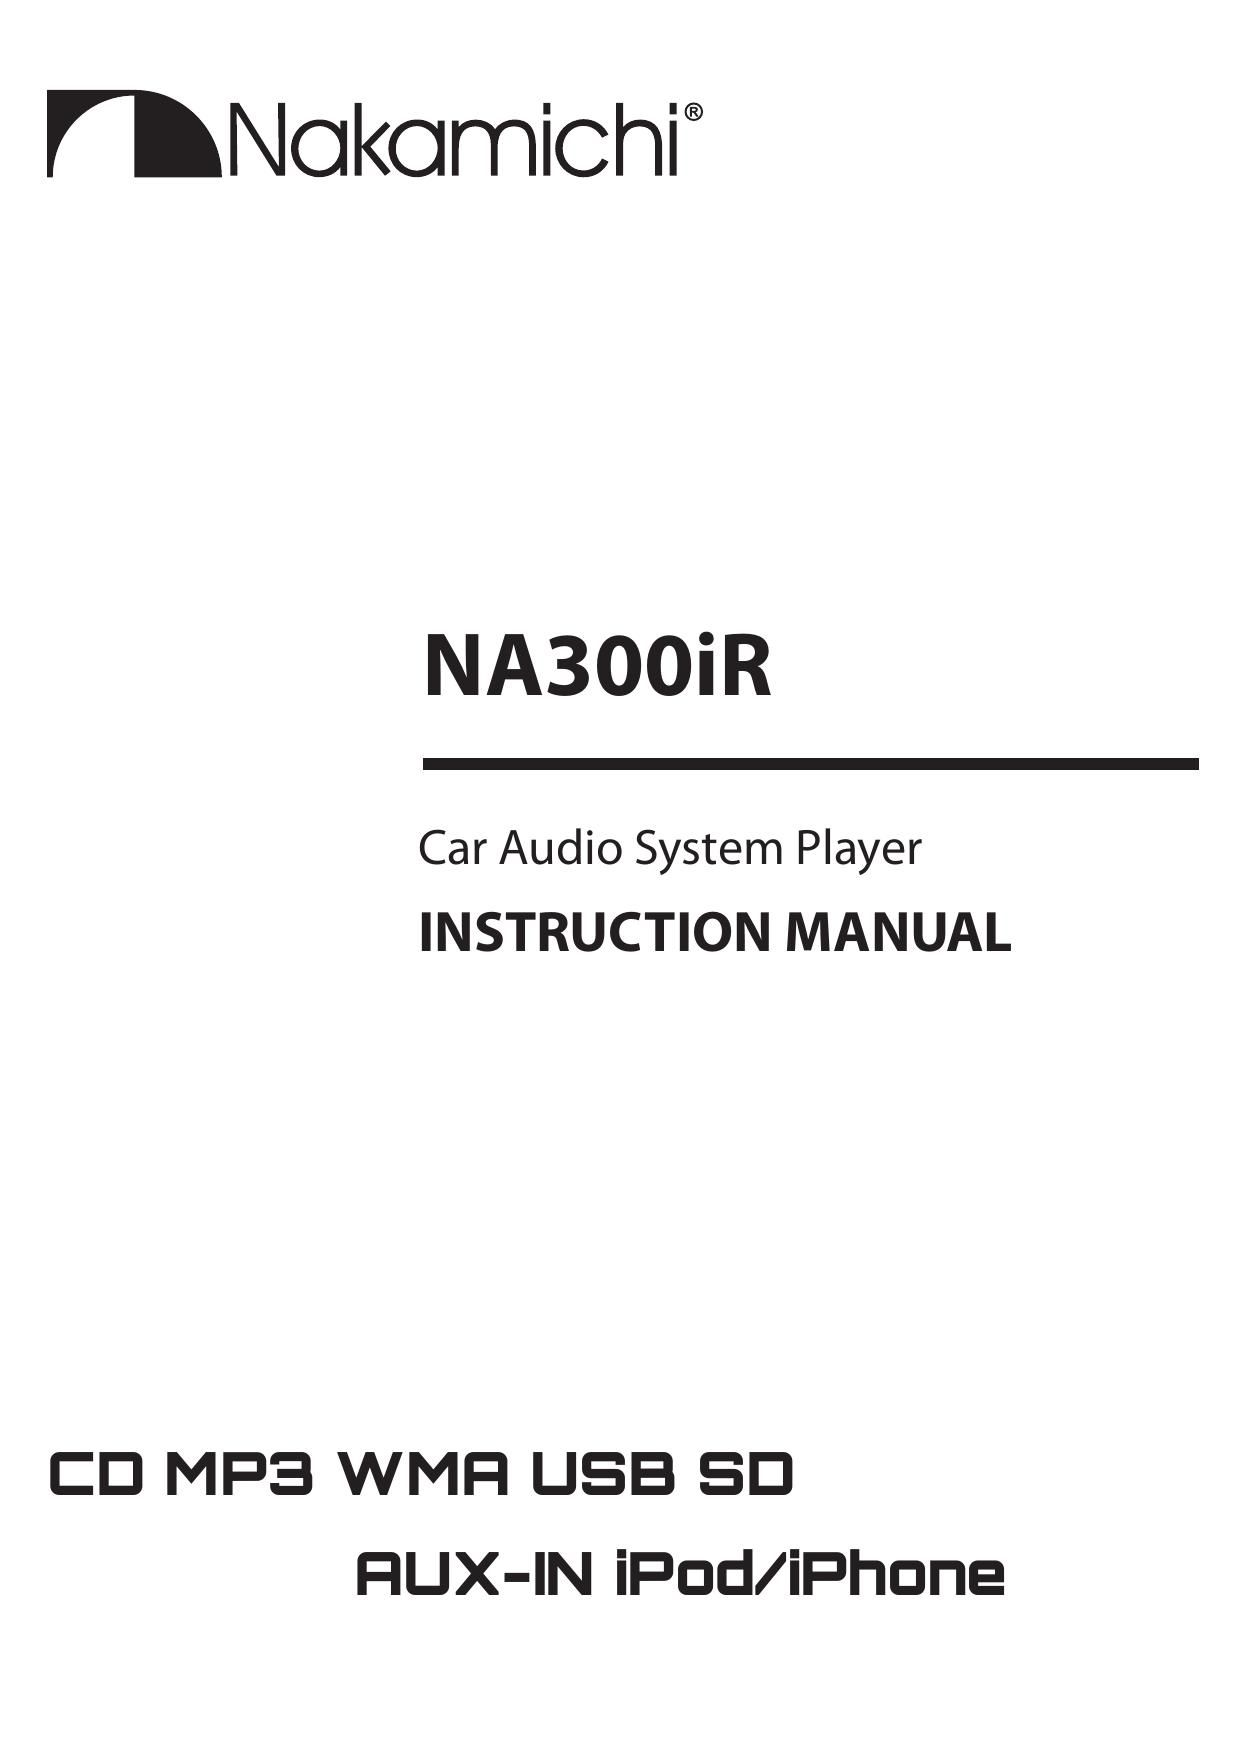 Nakamichi NA 300 IR Owners Manual